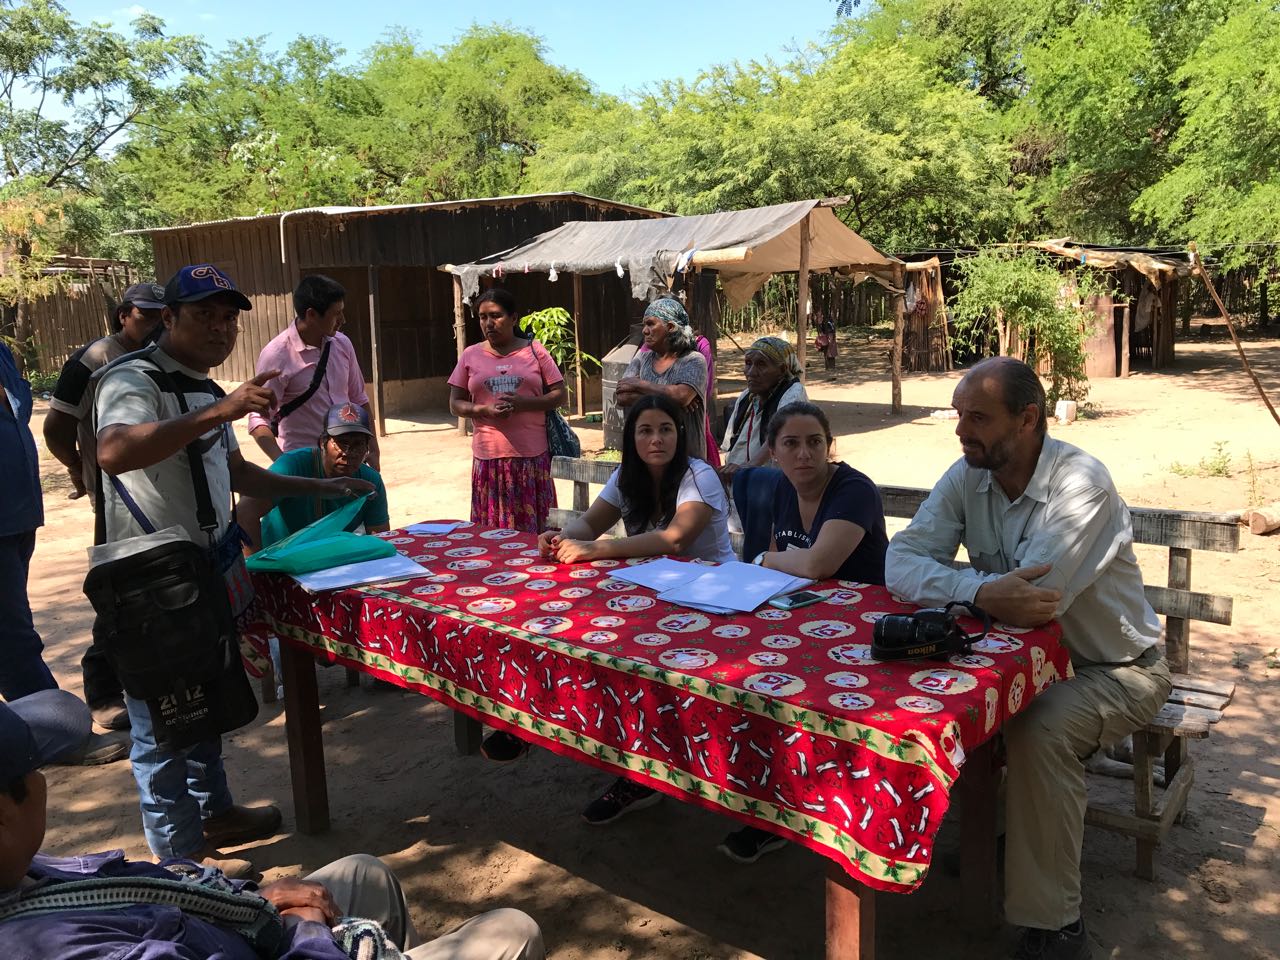 Relevamiento de la Defensoría del Pueblo por problemas de Documentación y Registración en Comunidades Indígenas de Salta